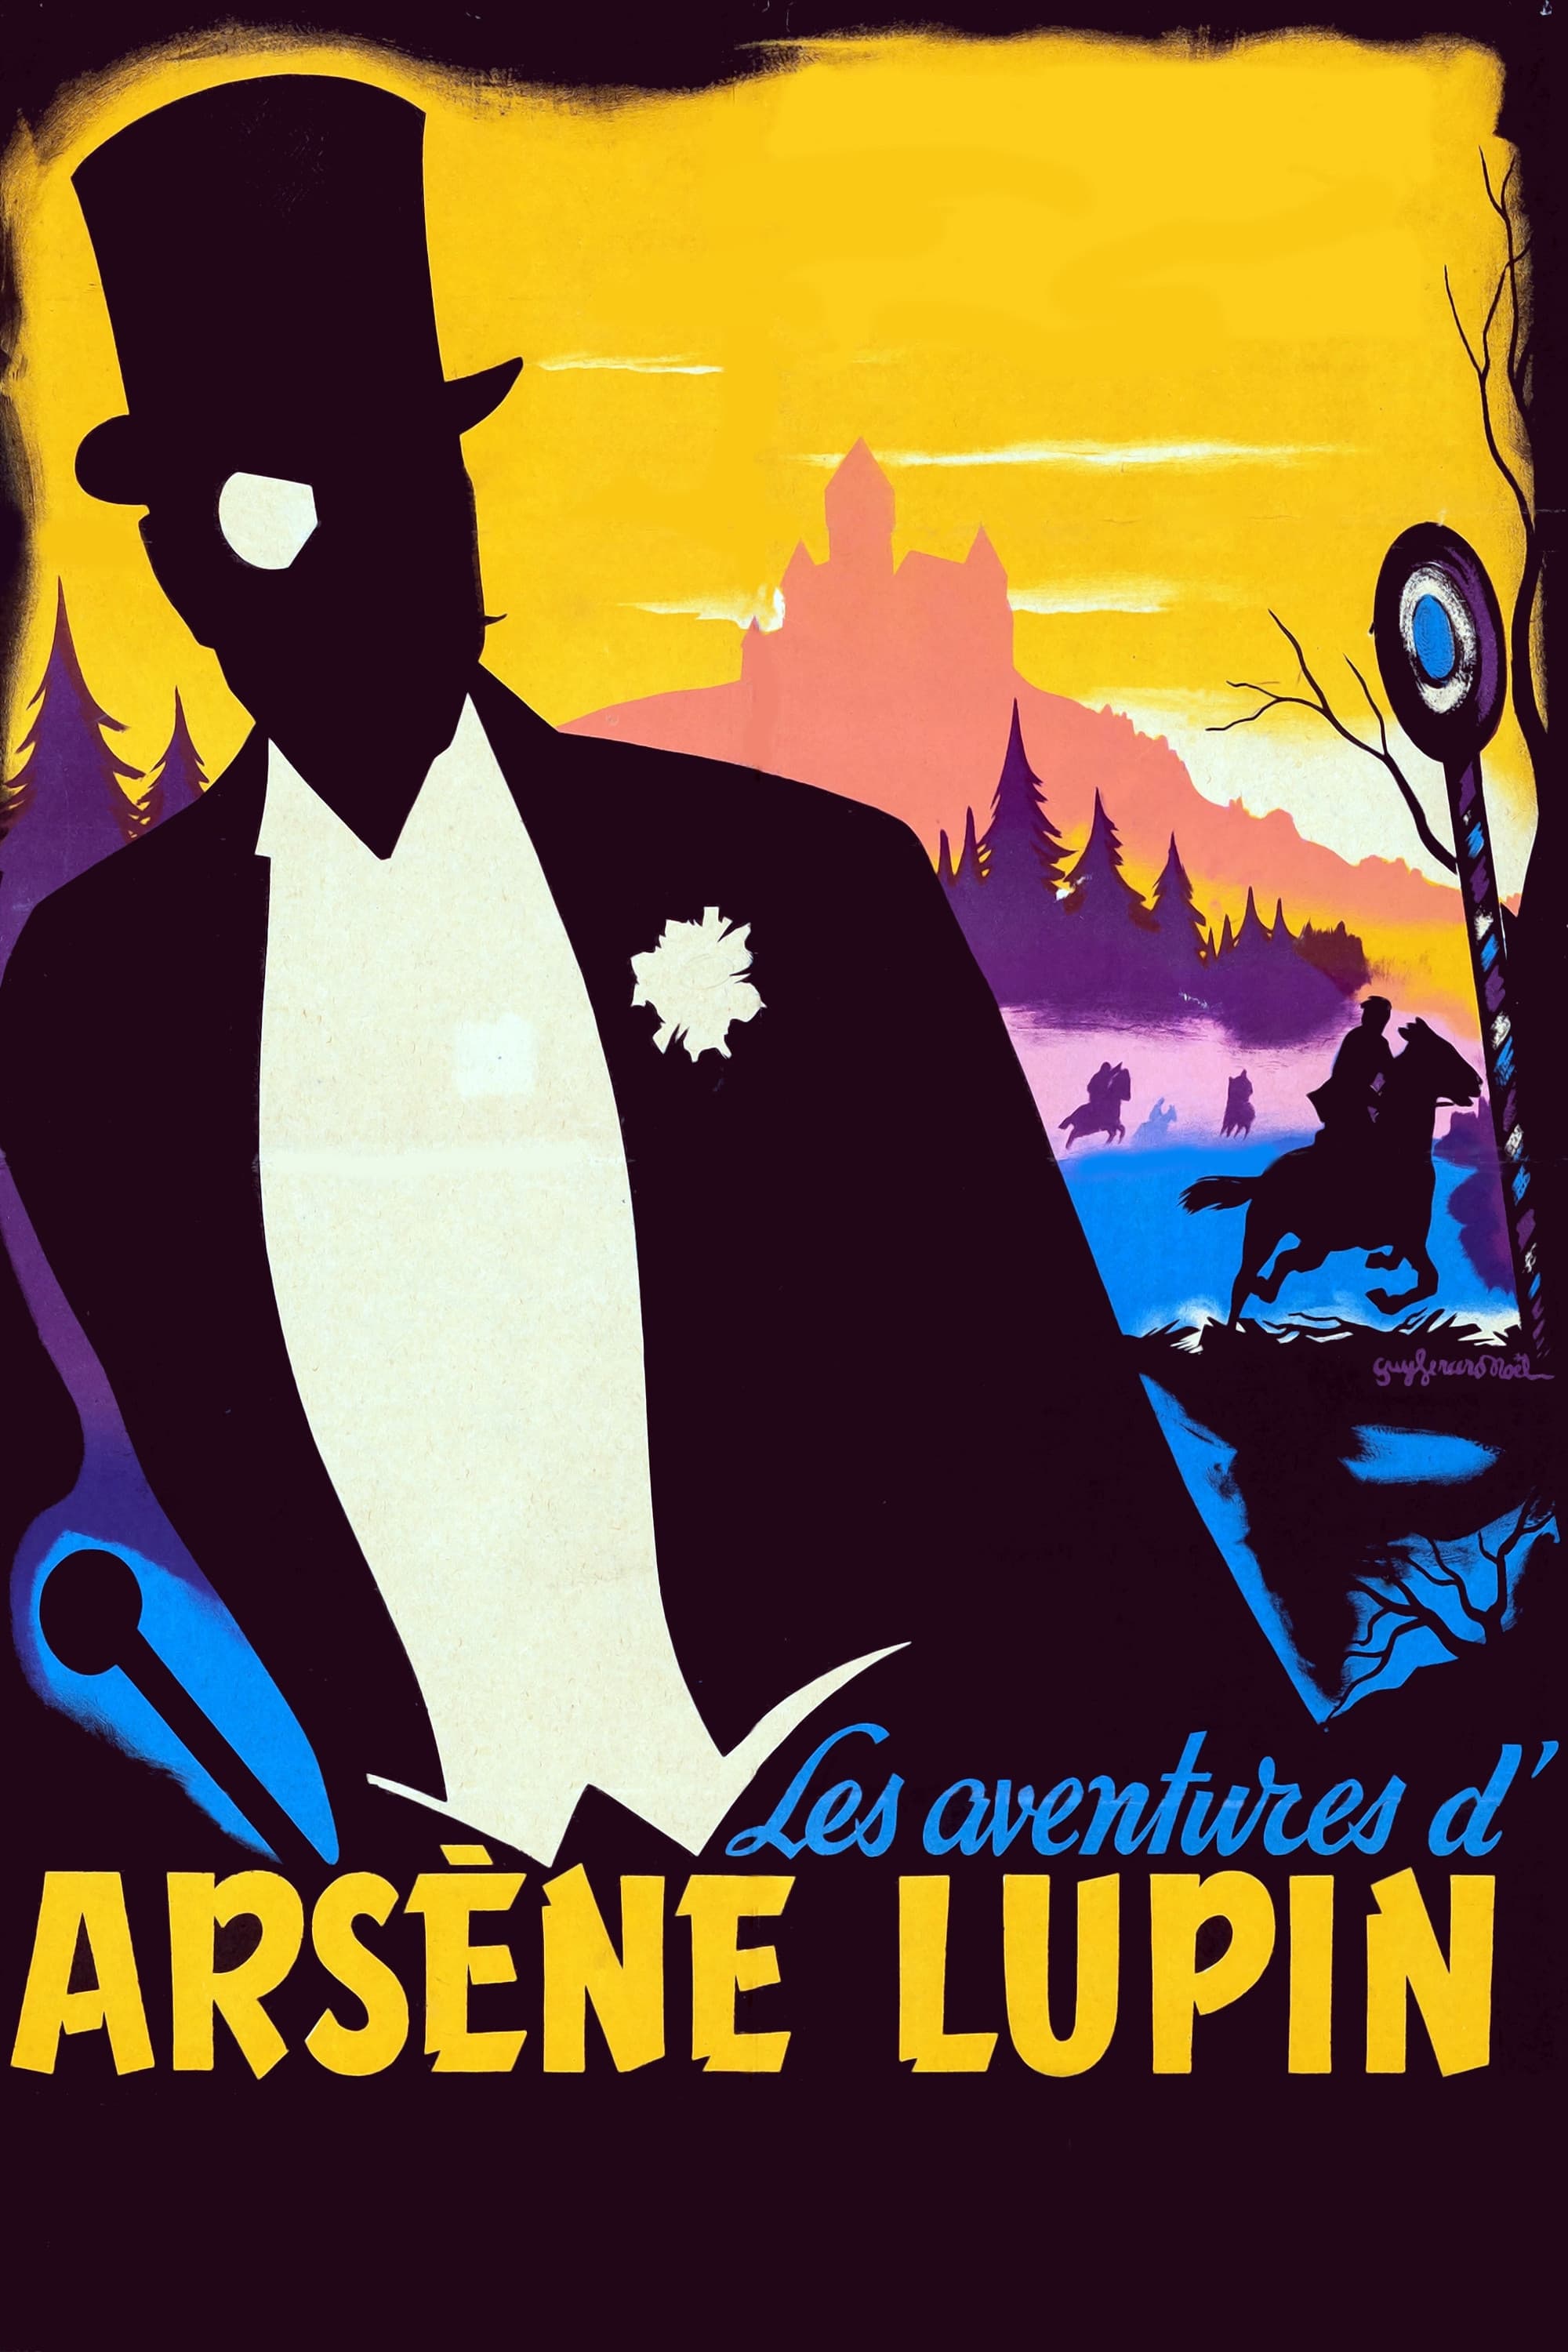 Arsène Lupin, der Millionendieb (1957)